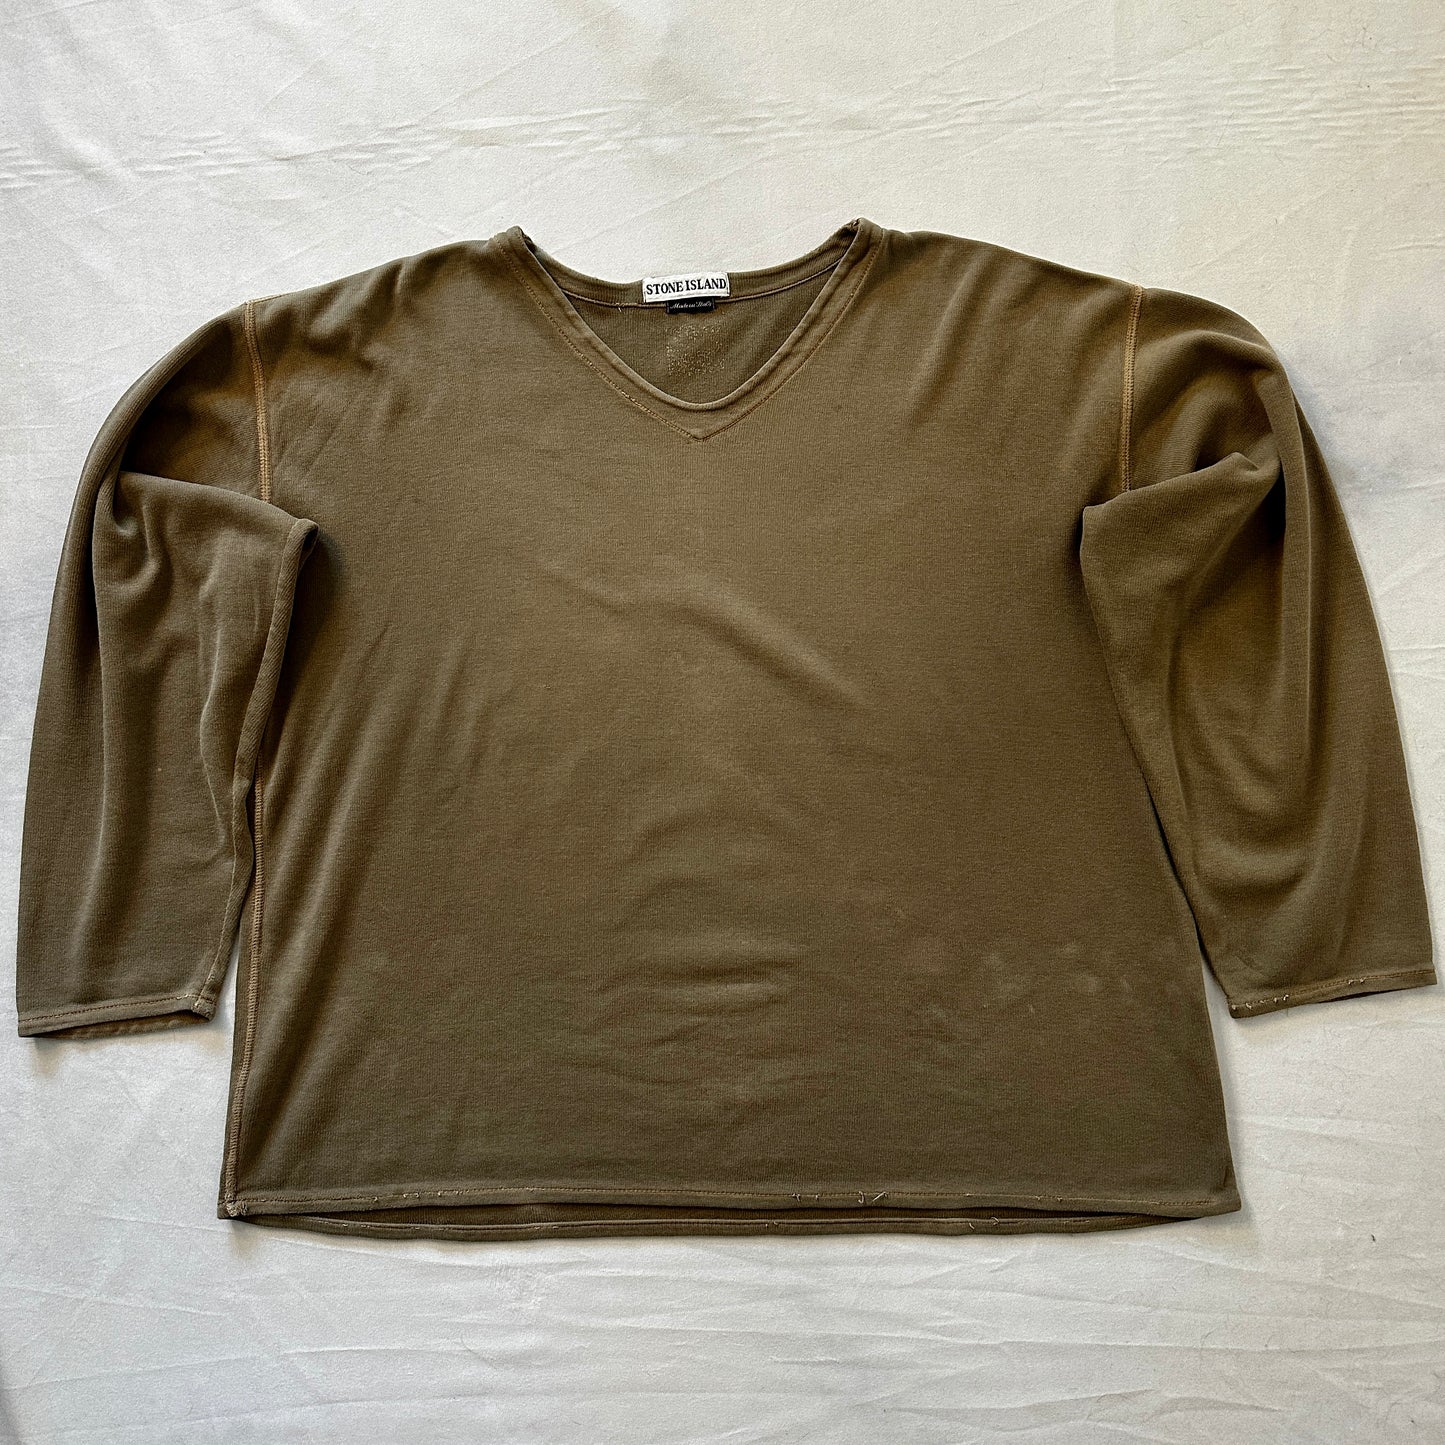 Stone Island Marina 1996 V-Neck Longsleeve Shirt - M - Made in Italy